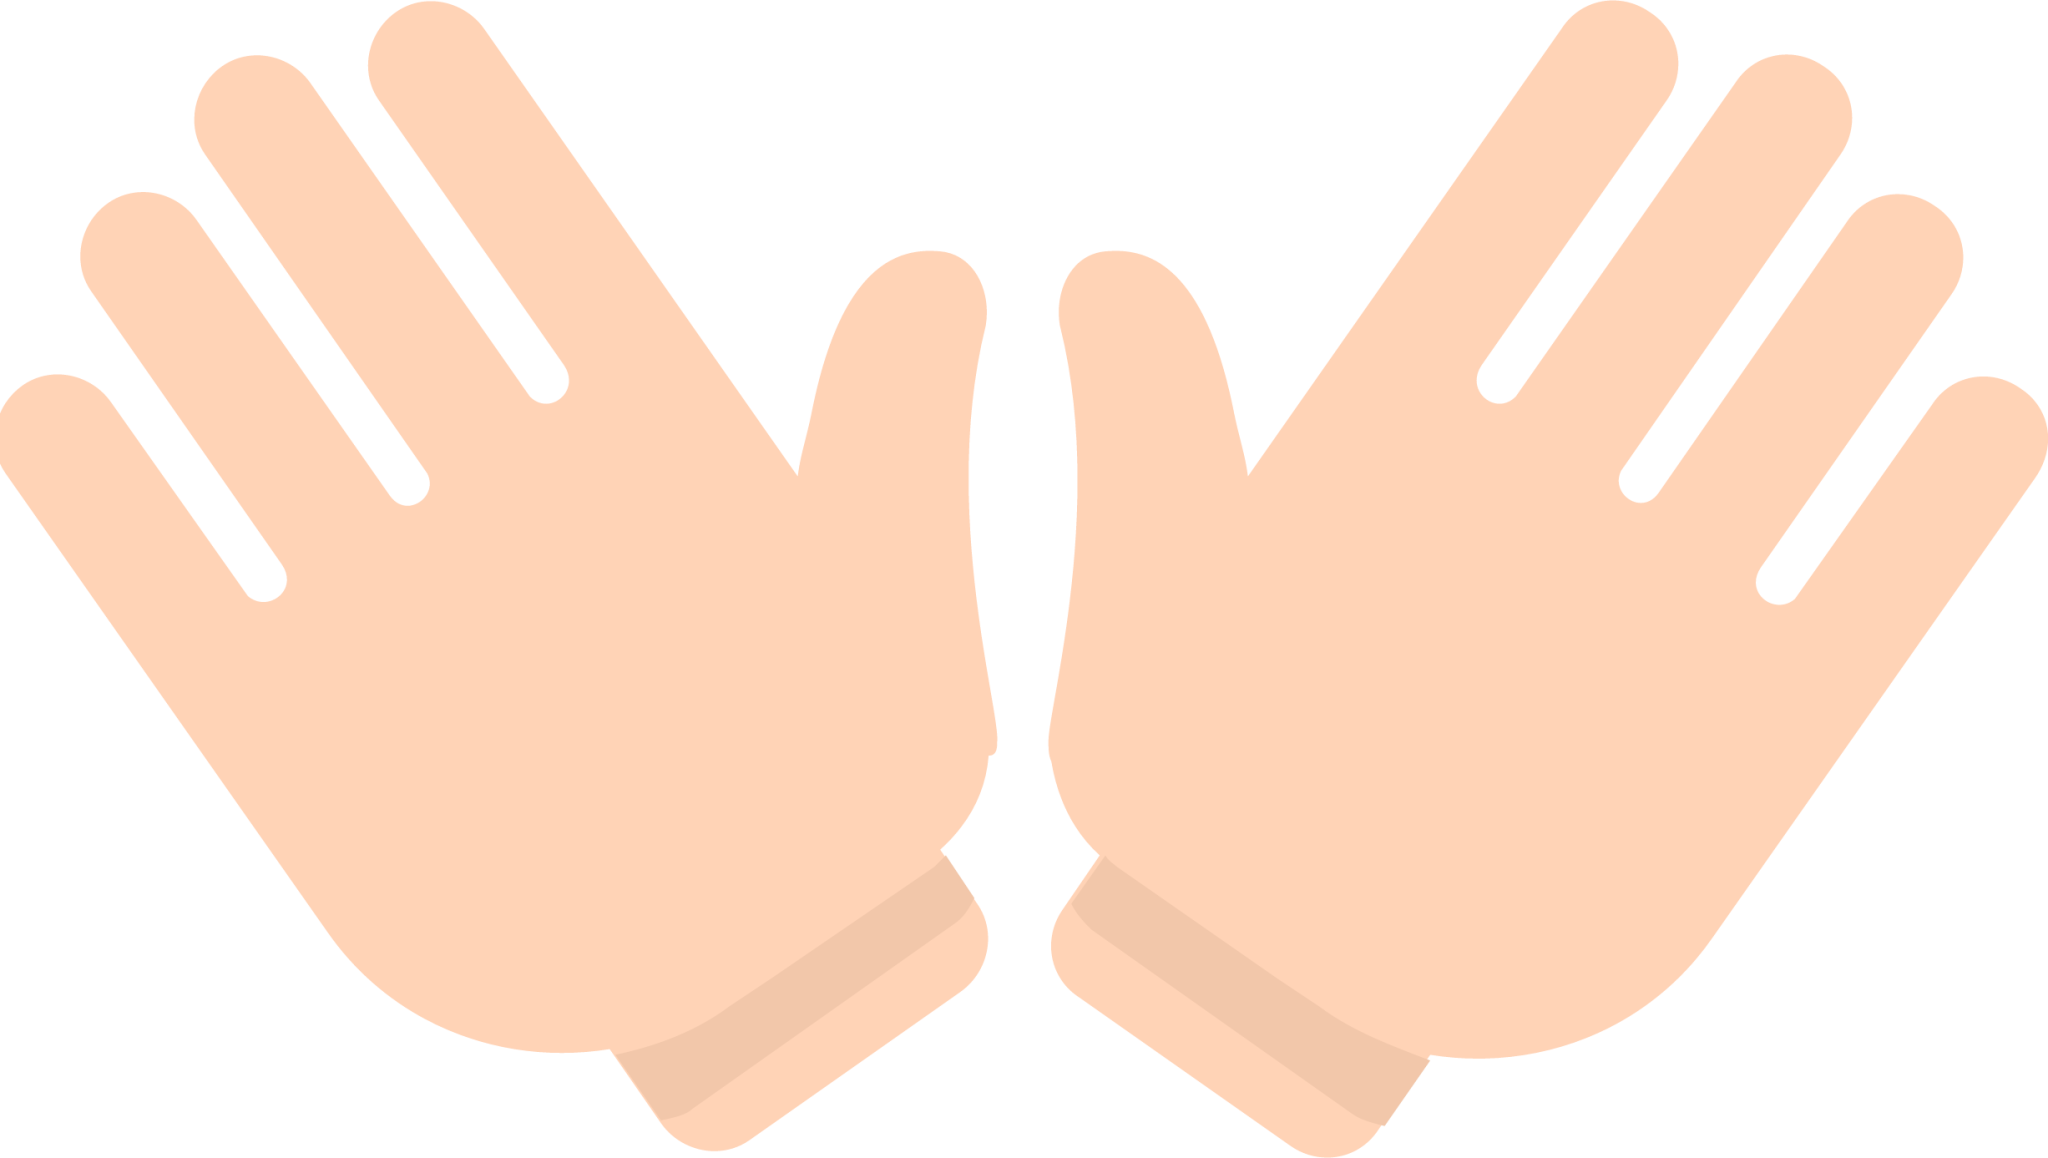 open hands emoji